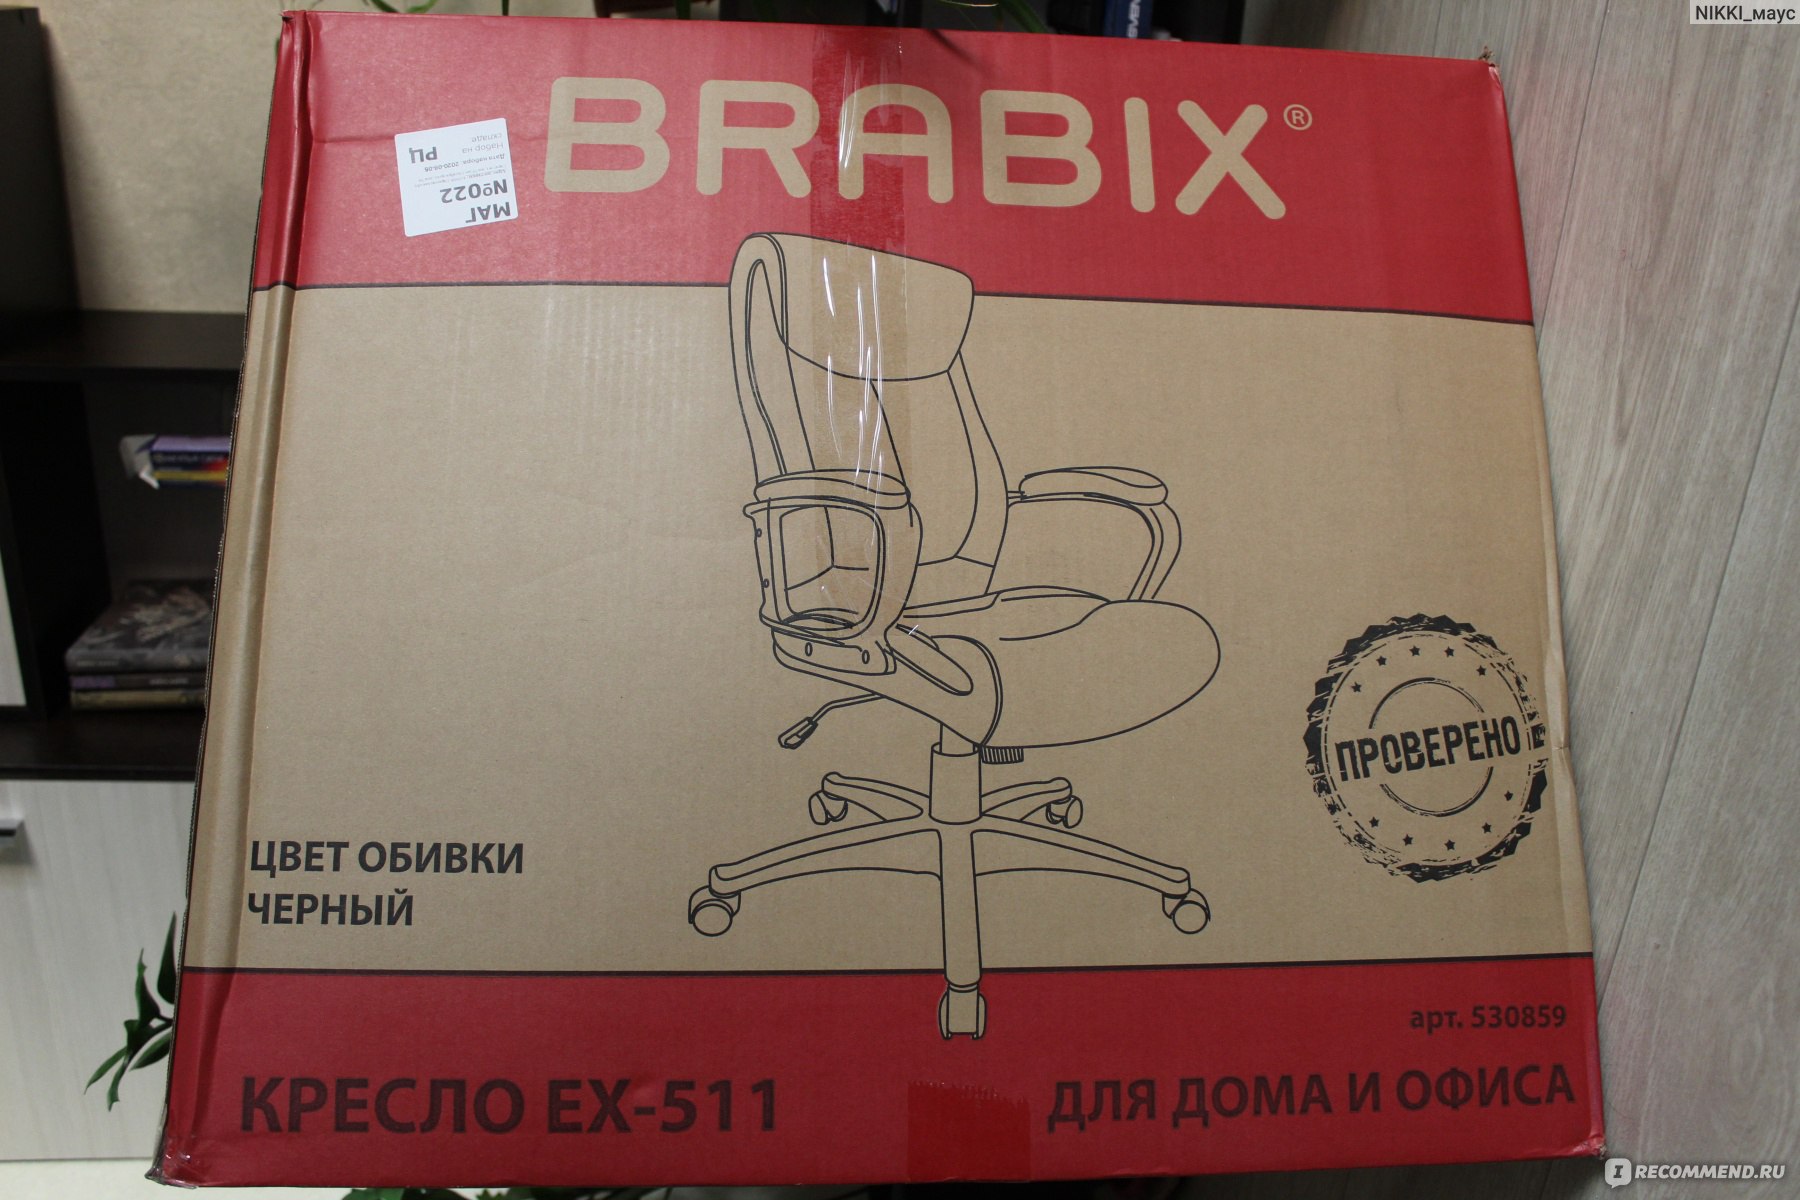 Brabix Premium 